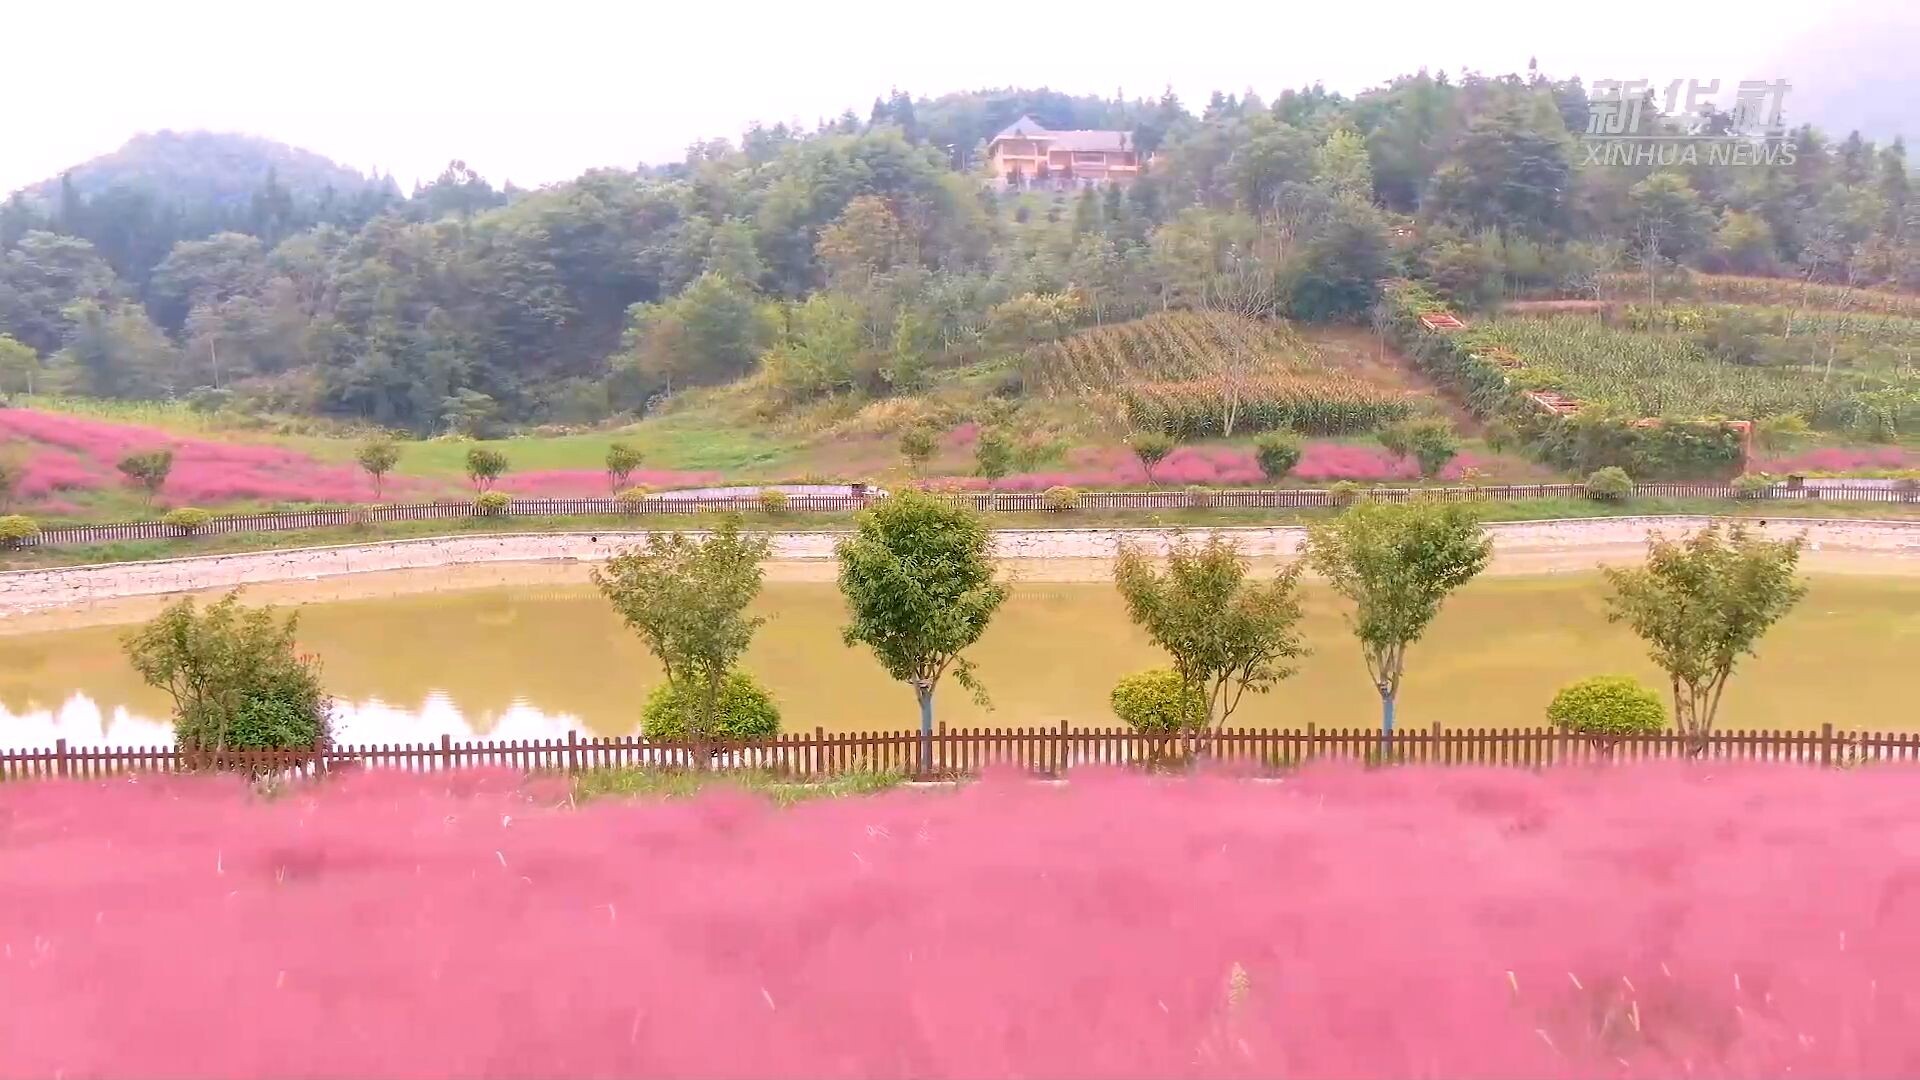 เที่ยวชม 'ทุ่งหญ้าสีชมพู' งดงามในหูเป่ย